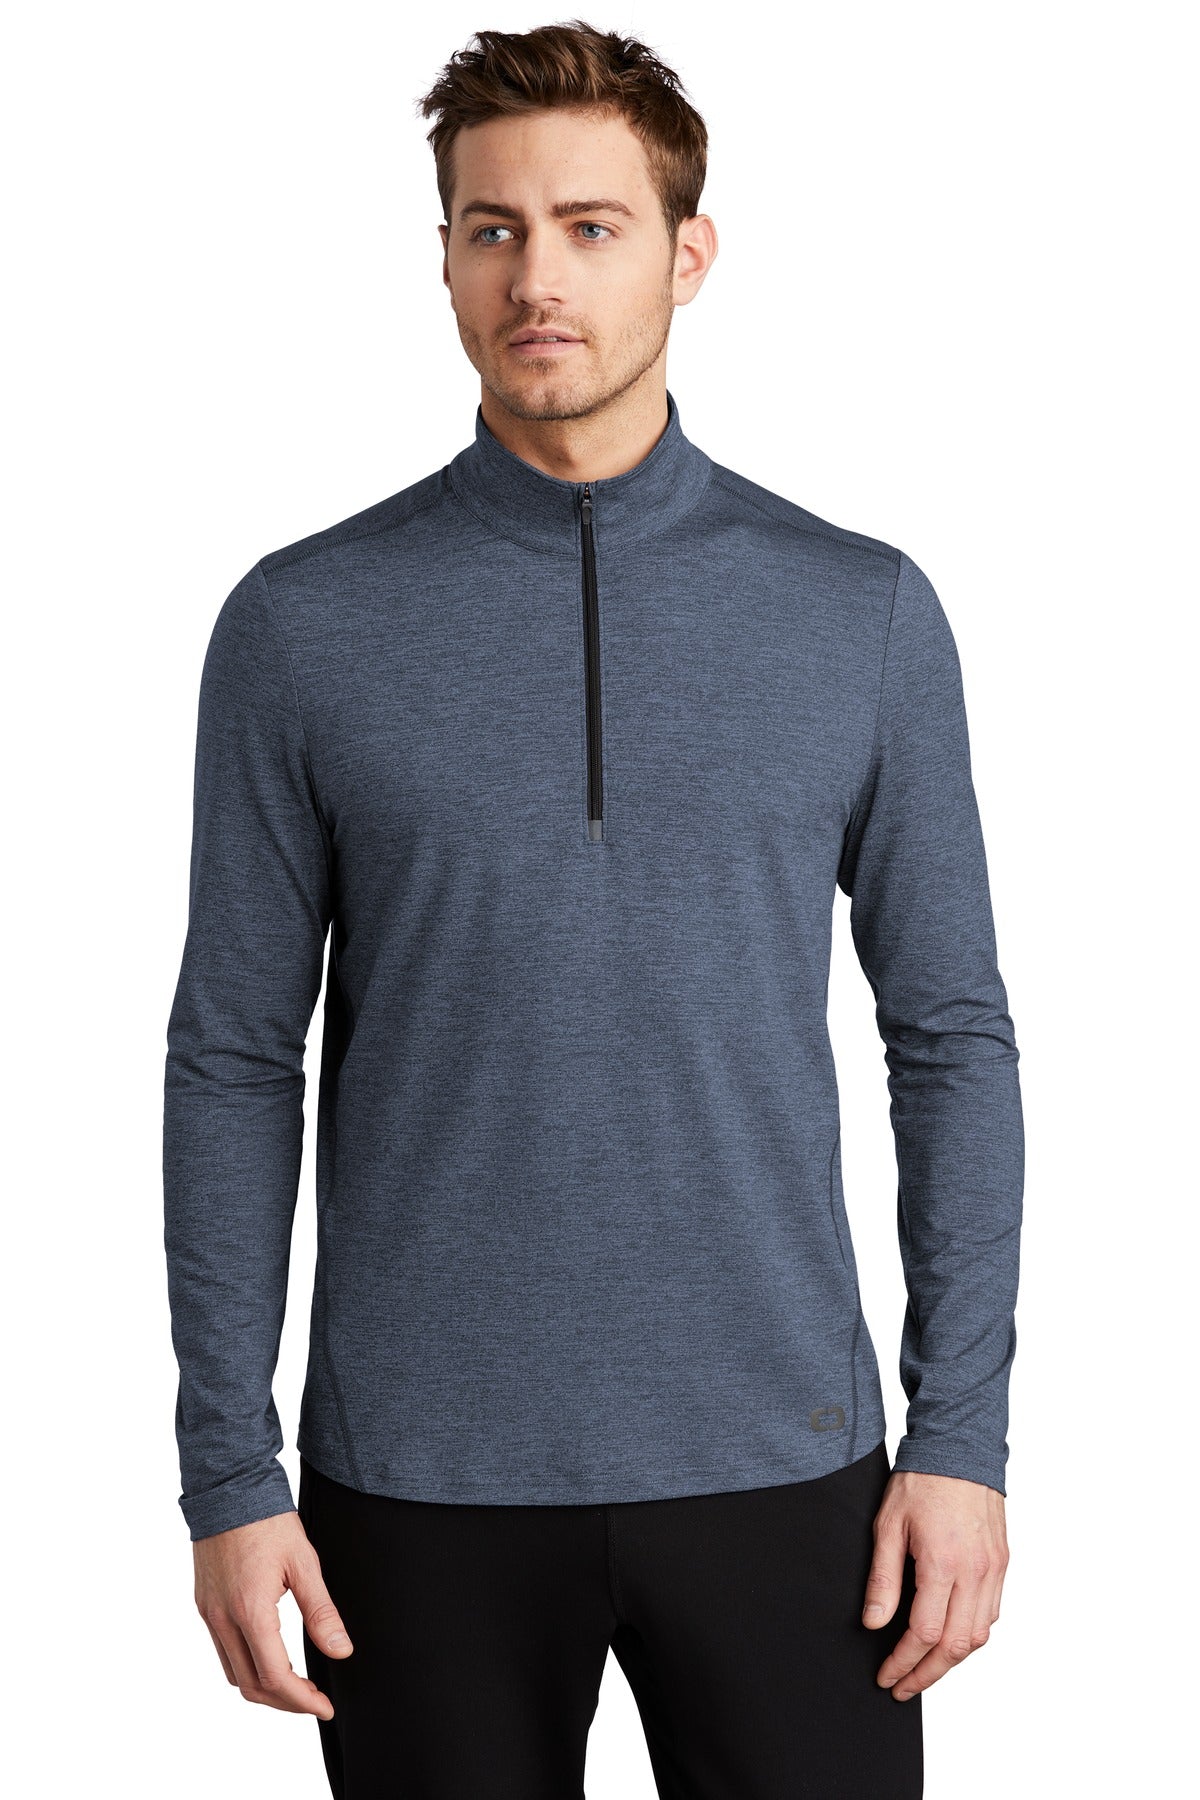 Sweatshirts/Fleece OGIO Endurance